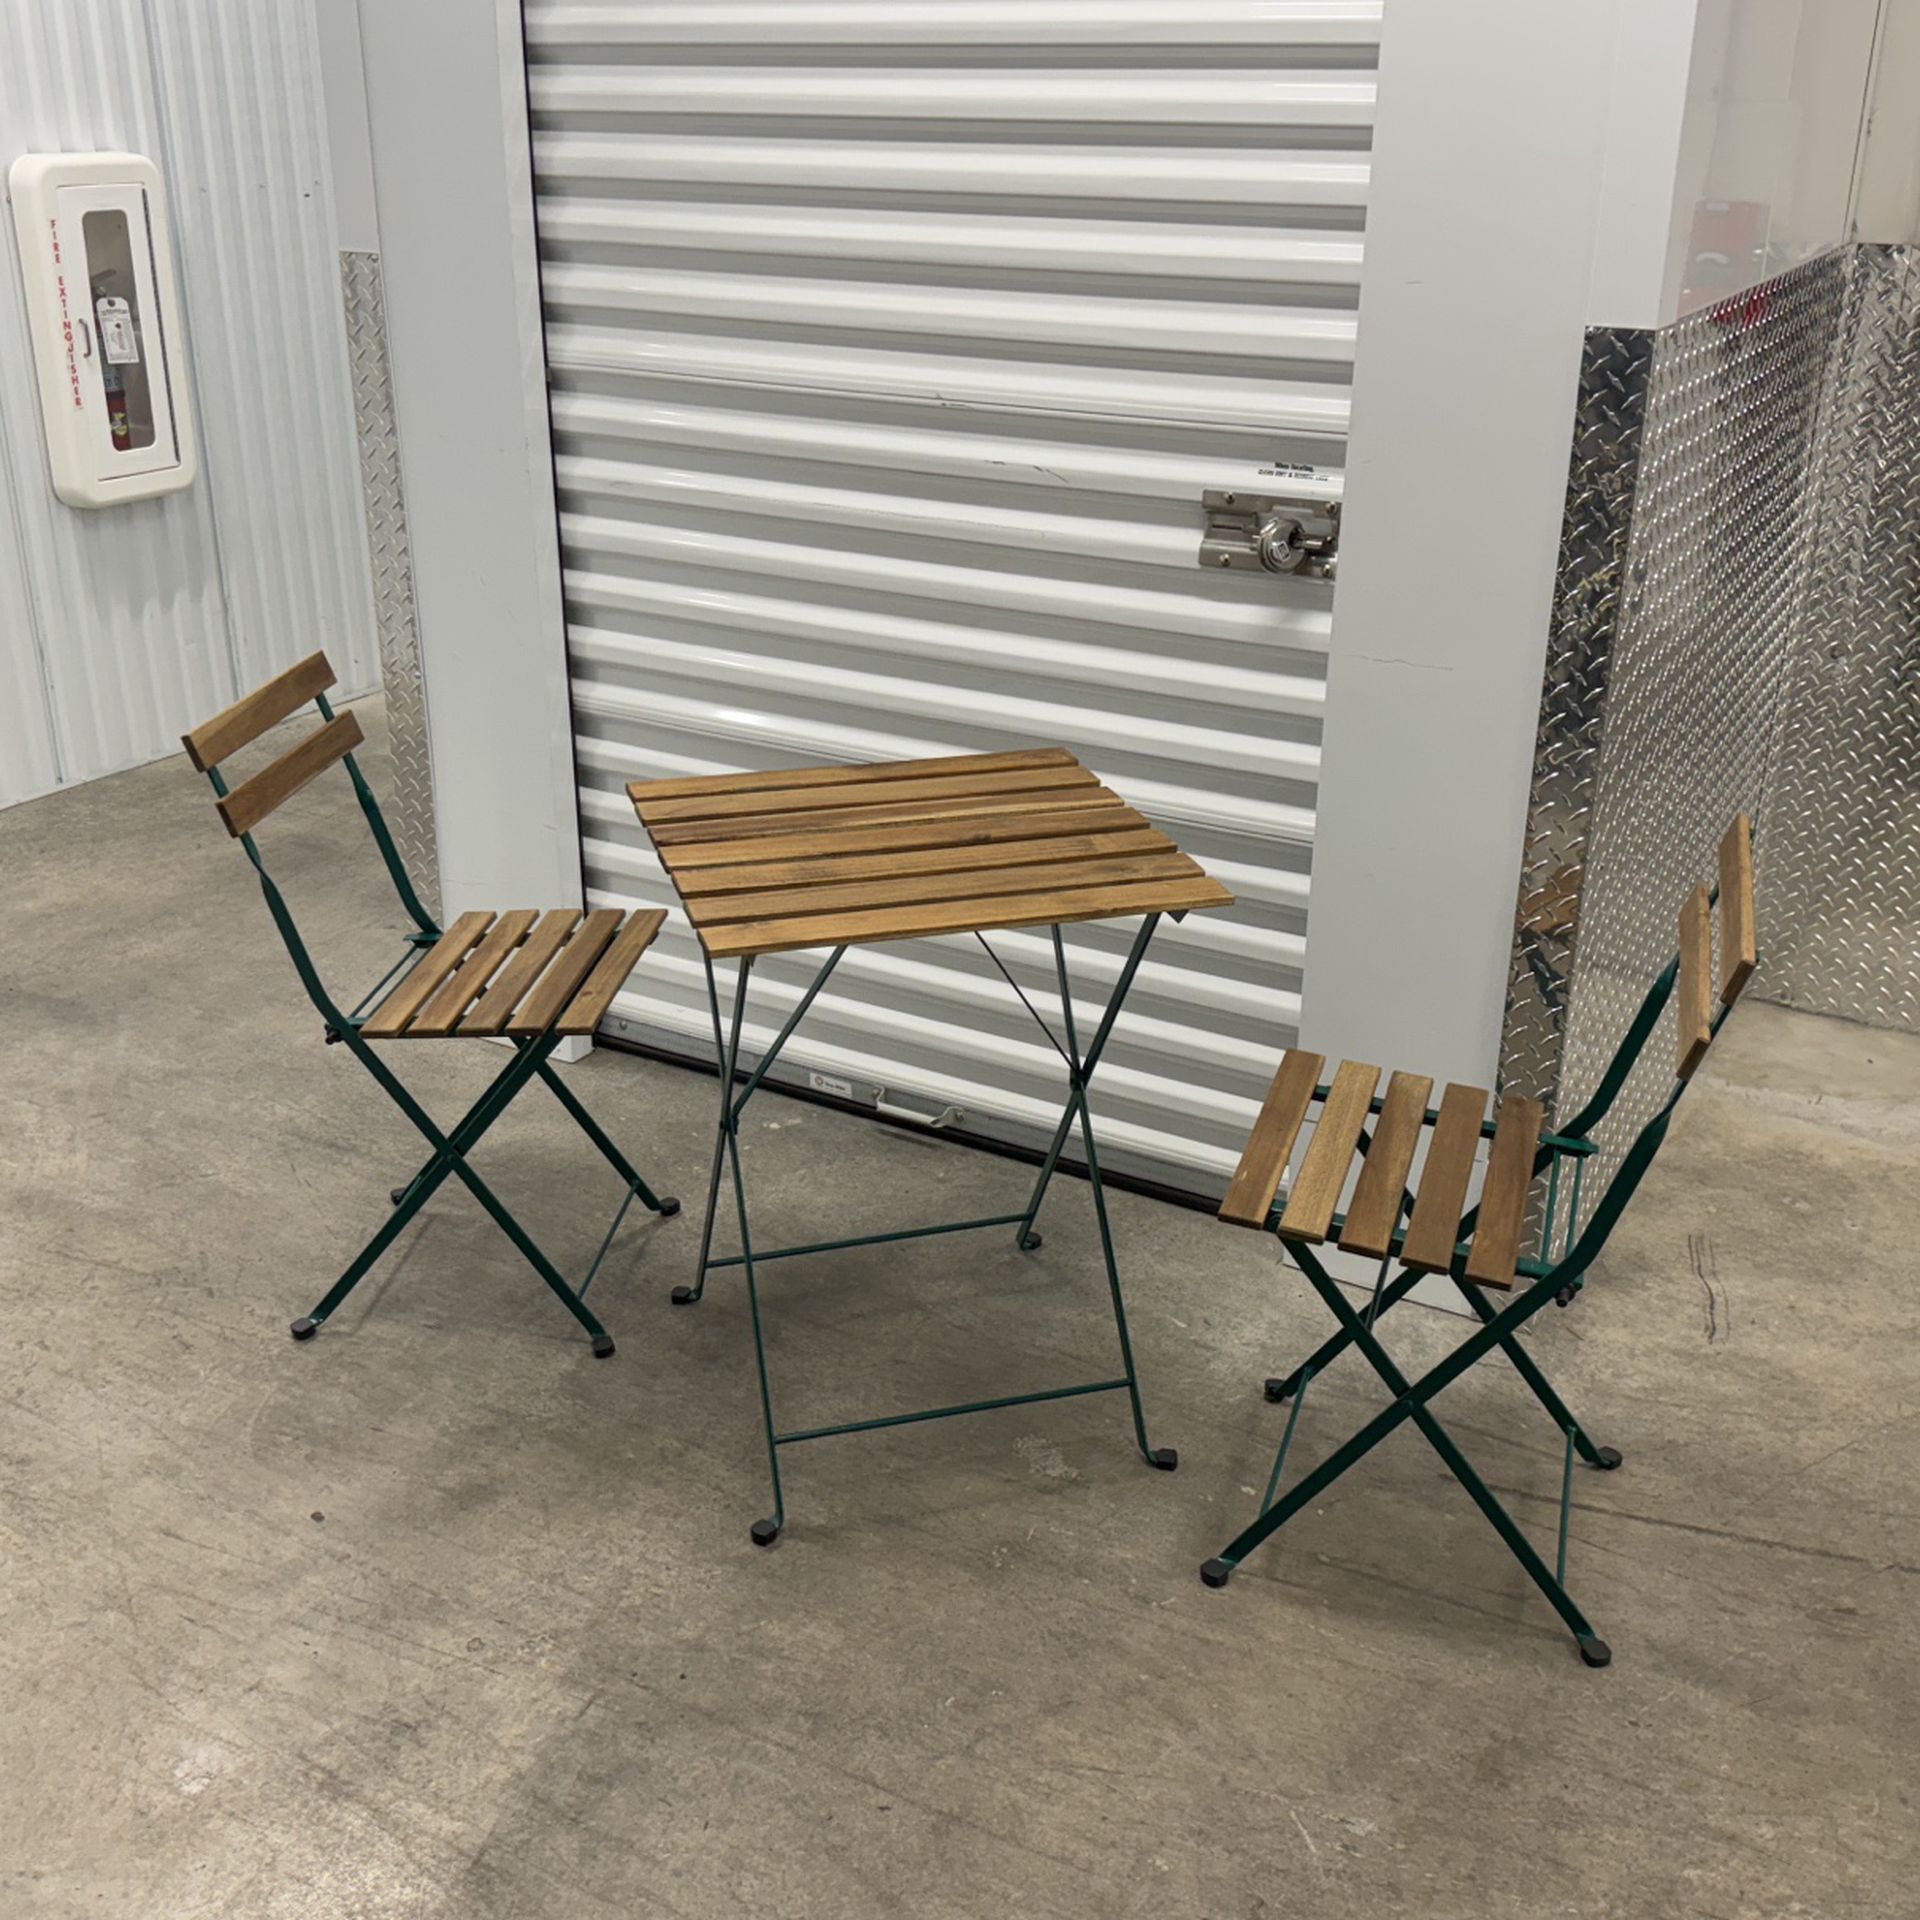 Ikea foldable patio furniture